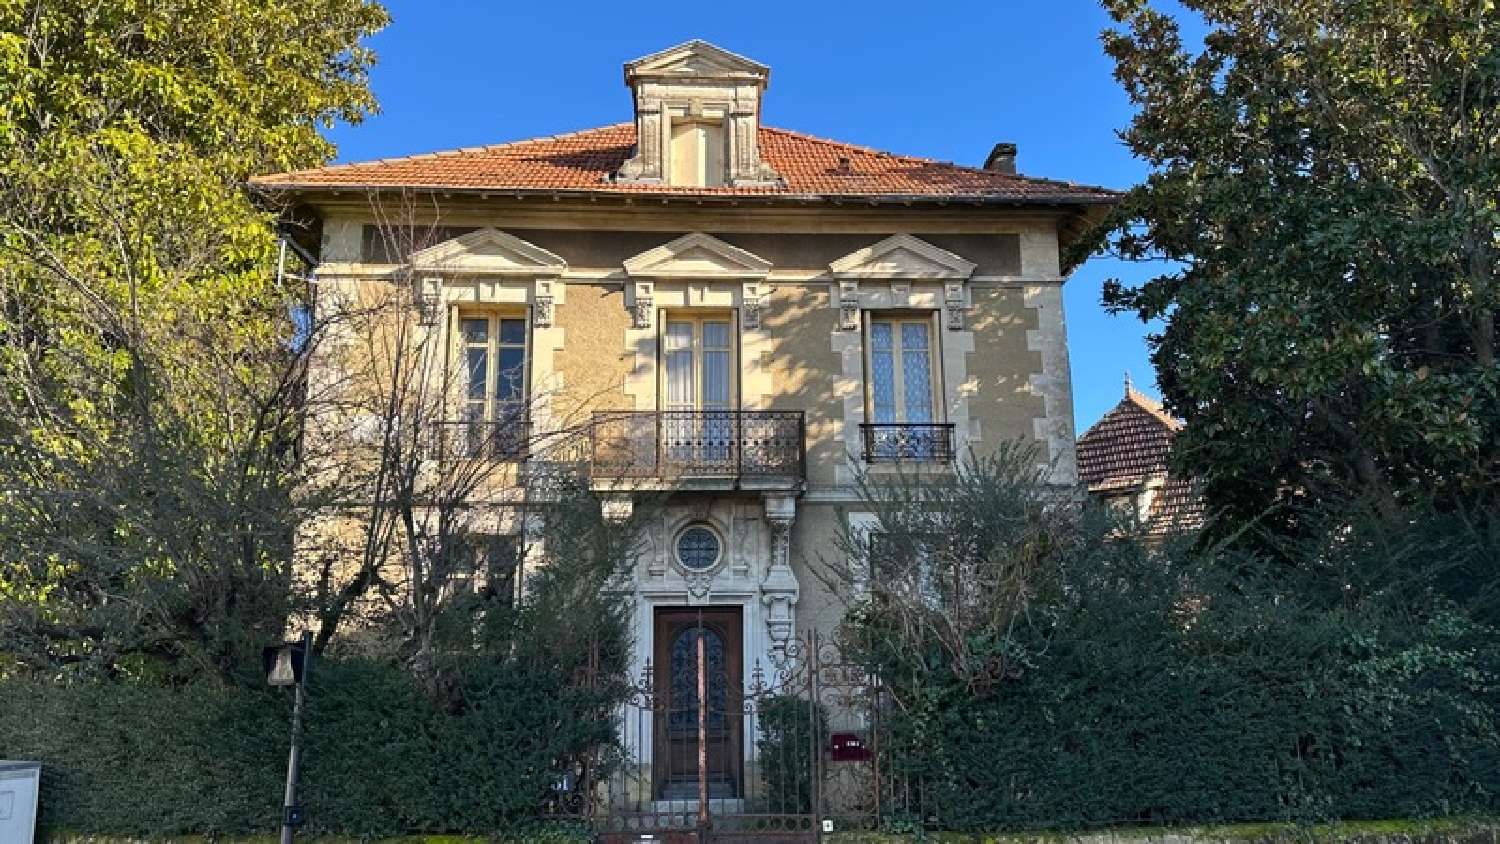  à vendre maison bourgeoise Bergerac Dordogne 1